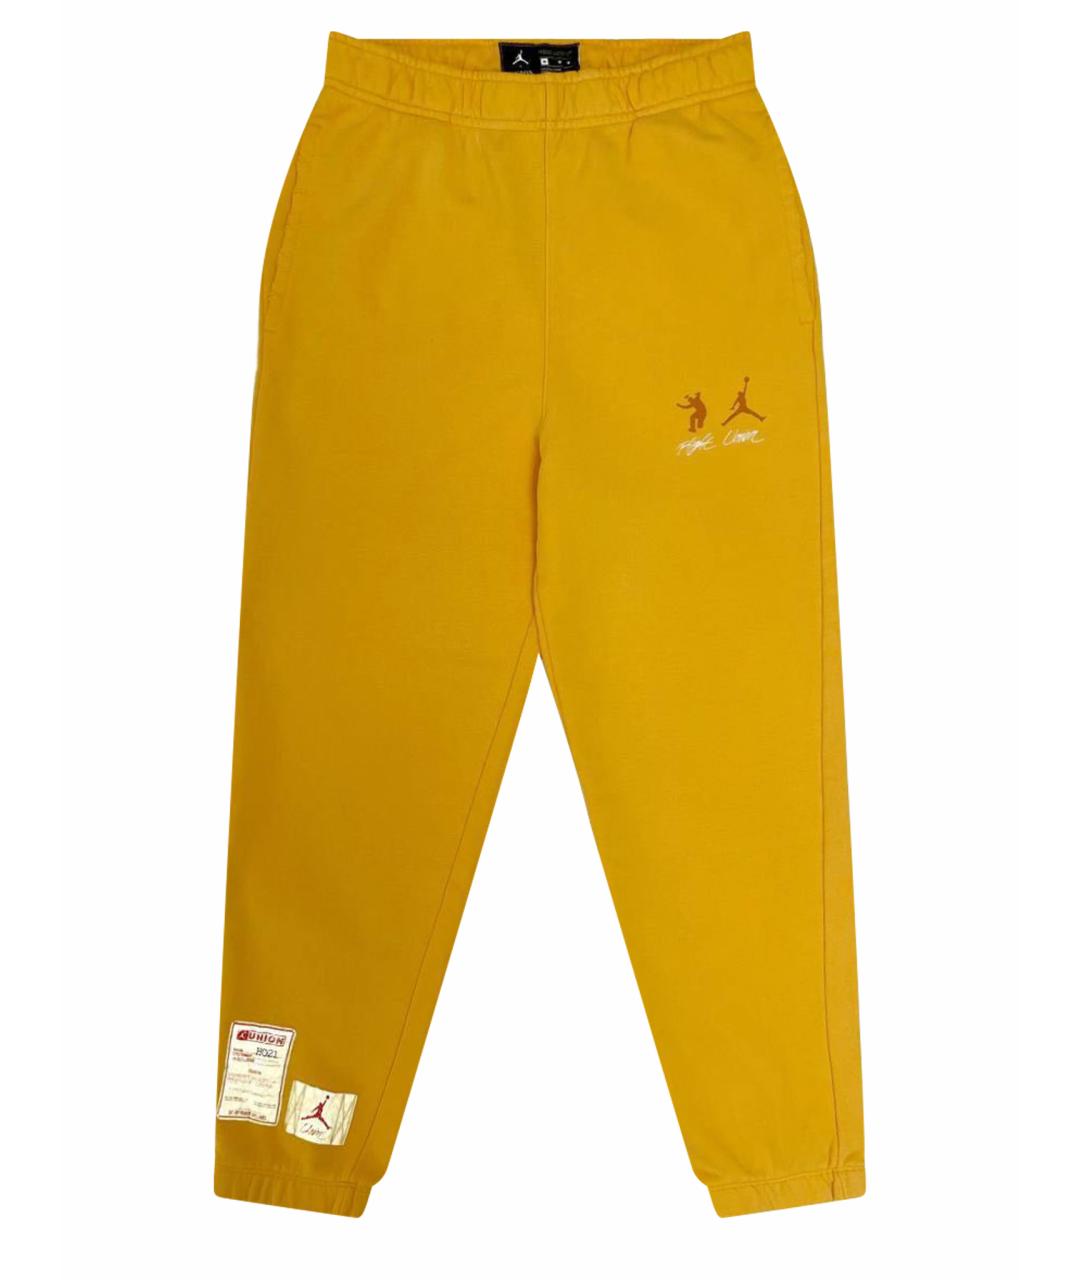 Union LA Желтые хлопковые повседневные брюки, фото 1